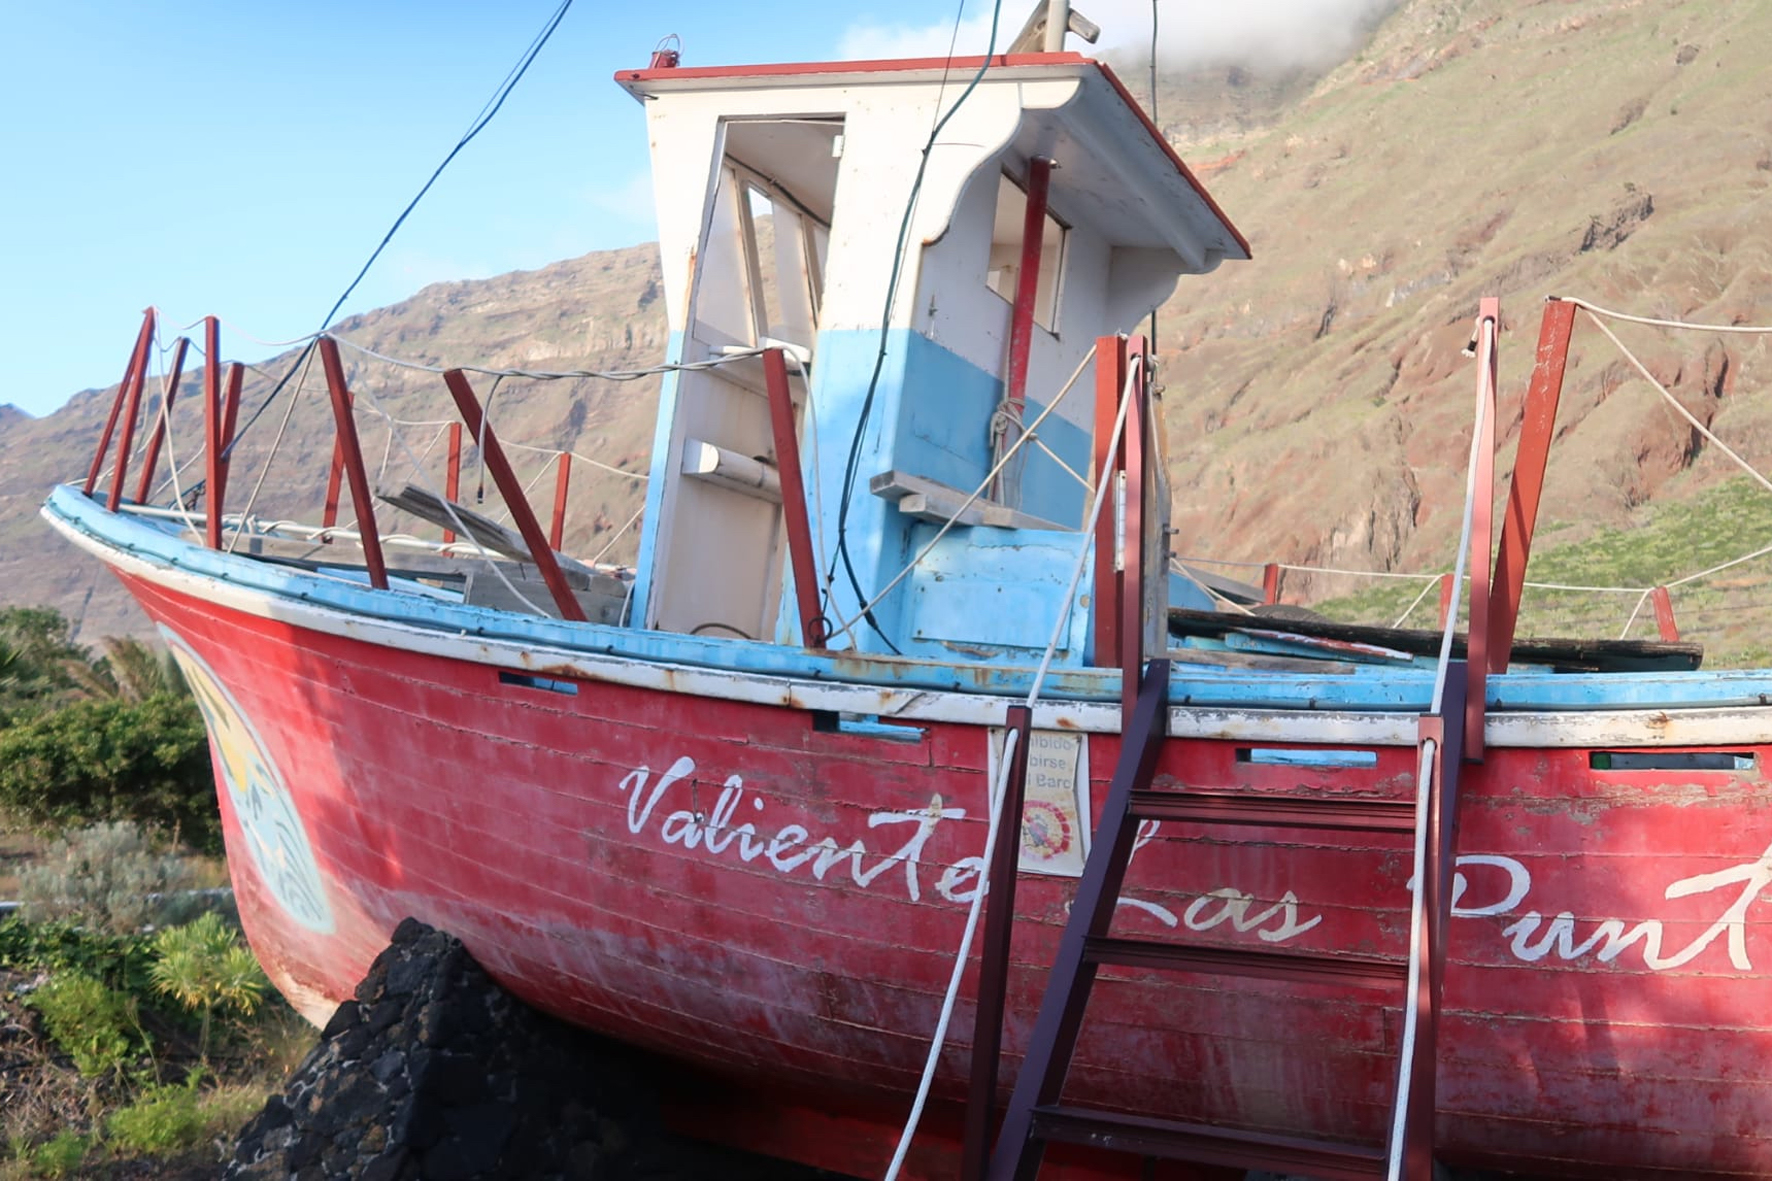 AHI-CC reclama al Ayuntamiento de La Frontera que restaure el barco “Valiente Las Puntas”